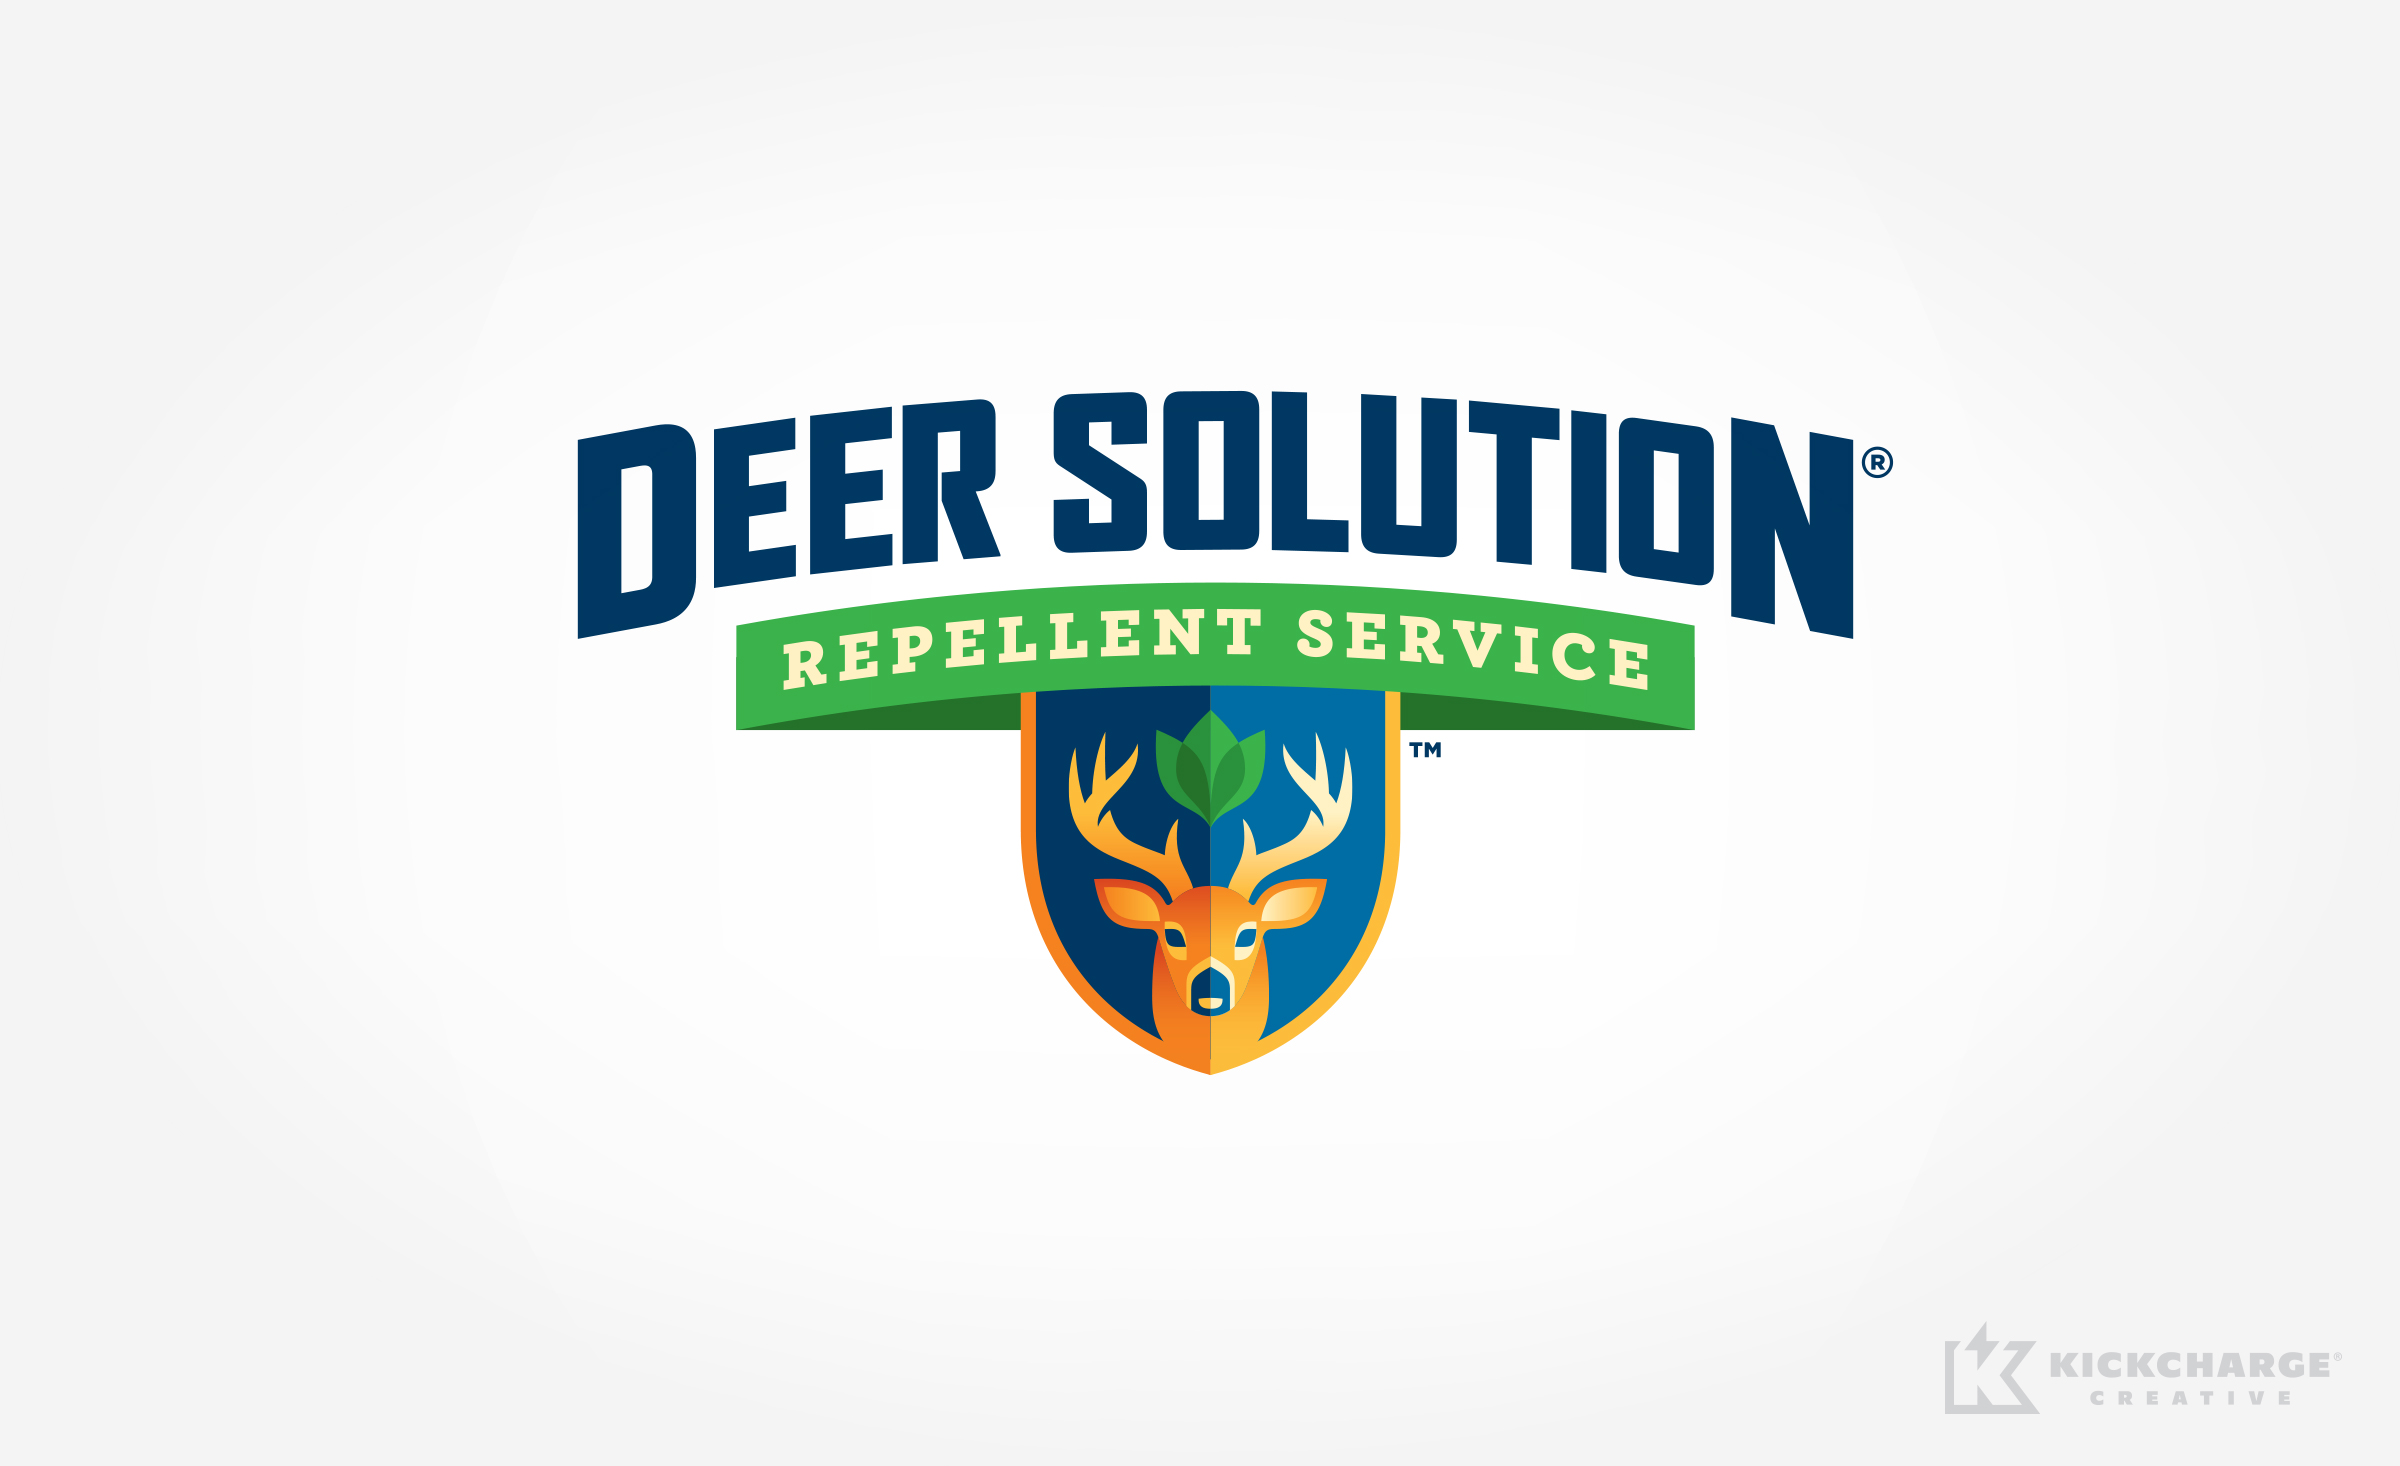 Deer Solution